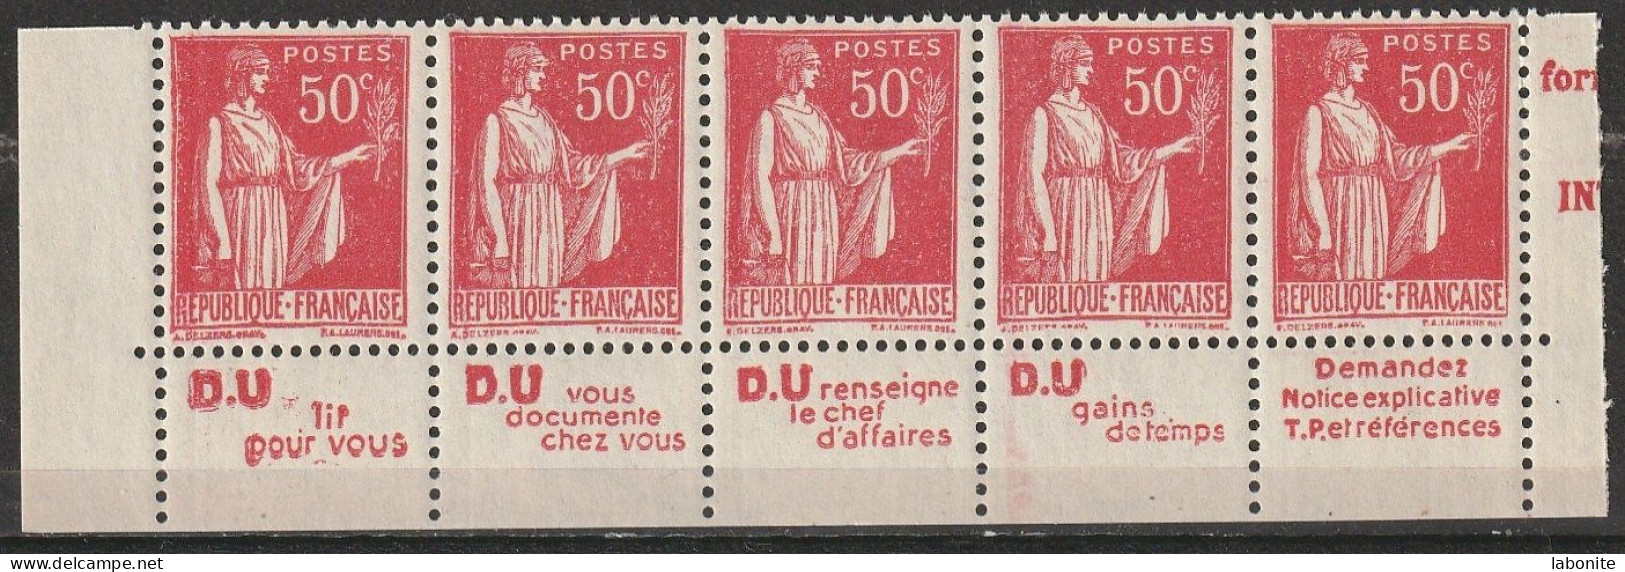 Publicité - YT 283c Paix 50c Type IIA - Bande De 5 " D.U. " Inférieure Texte Complet BdF (Maury : BP 207b) Neuf** - Unused Stamps